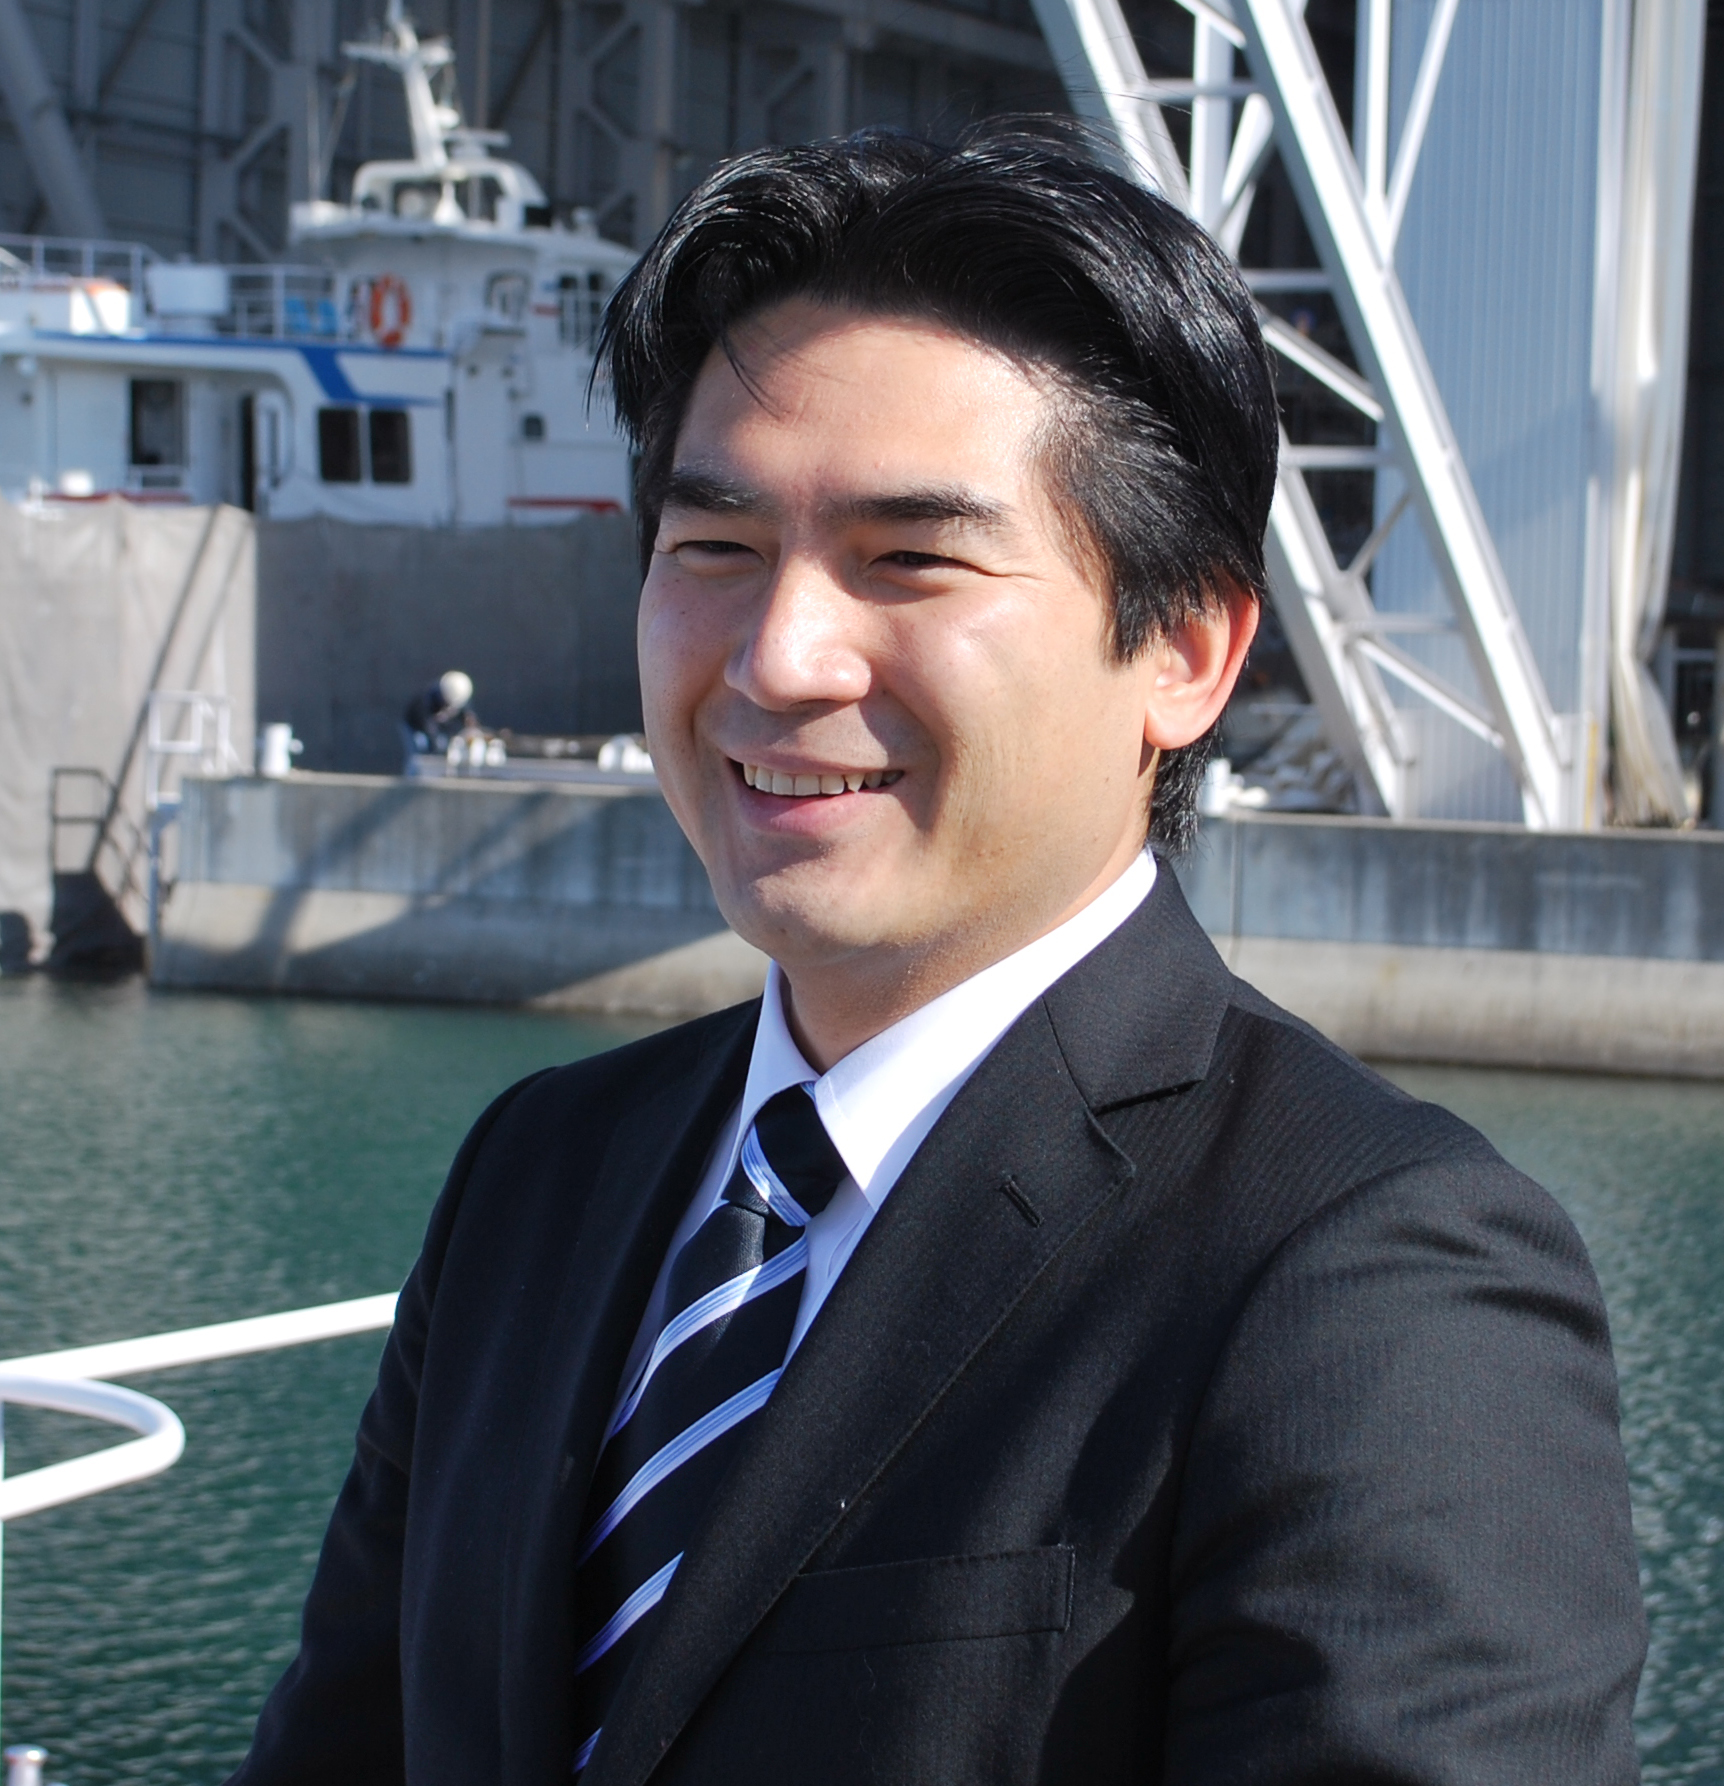 「復興の一番船 熱き心1000 キロを越えて ～常石グループの造船技術で、被災地支援～」ツネイシクラフト＆ファシリティーズ株式会社の代表取締役社長・神原潤がSEA JAPAN 2014で講演